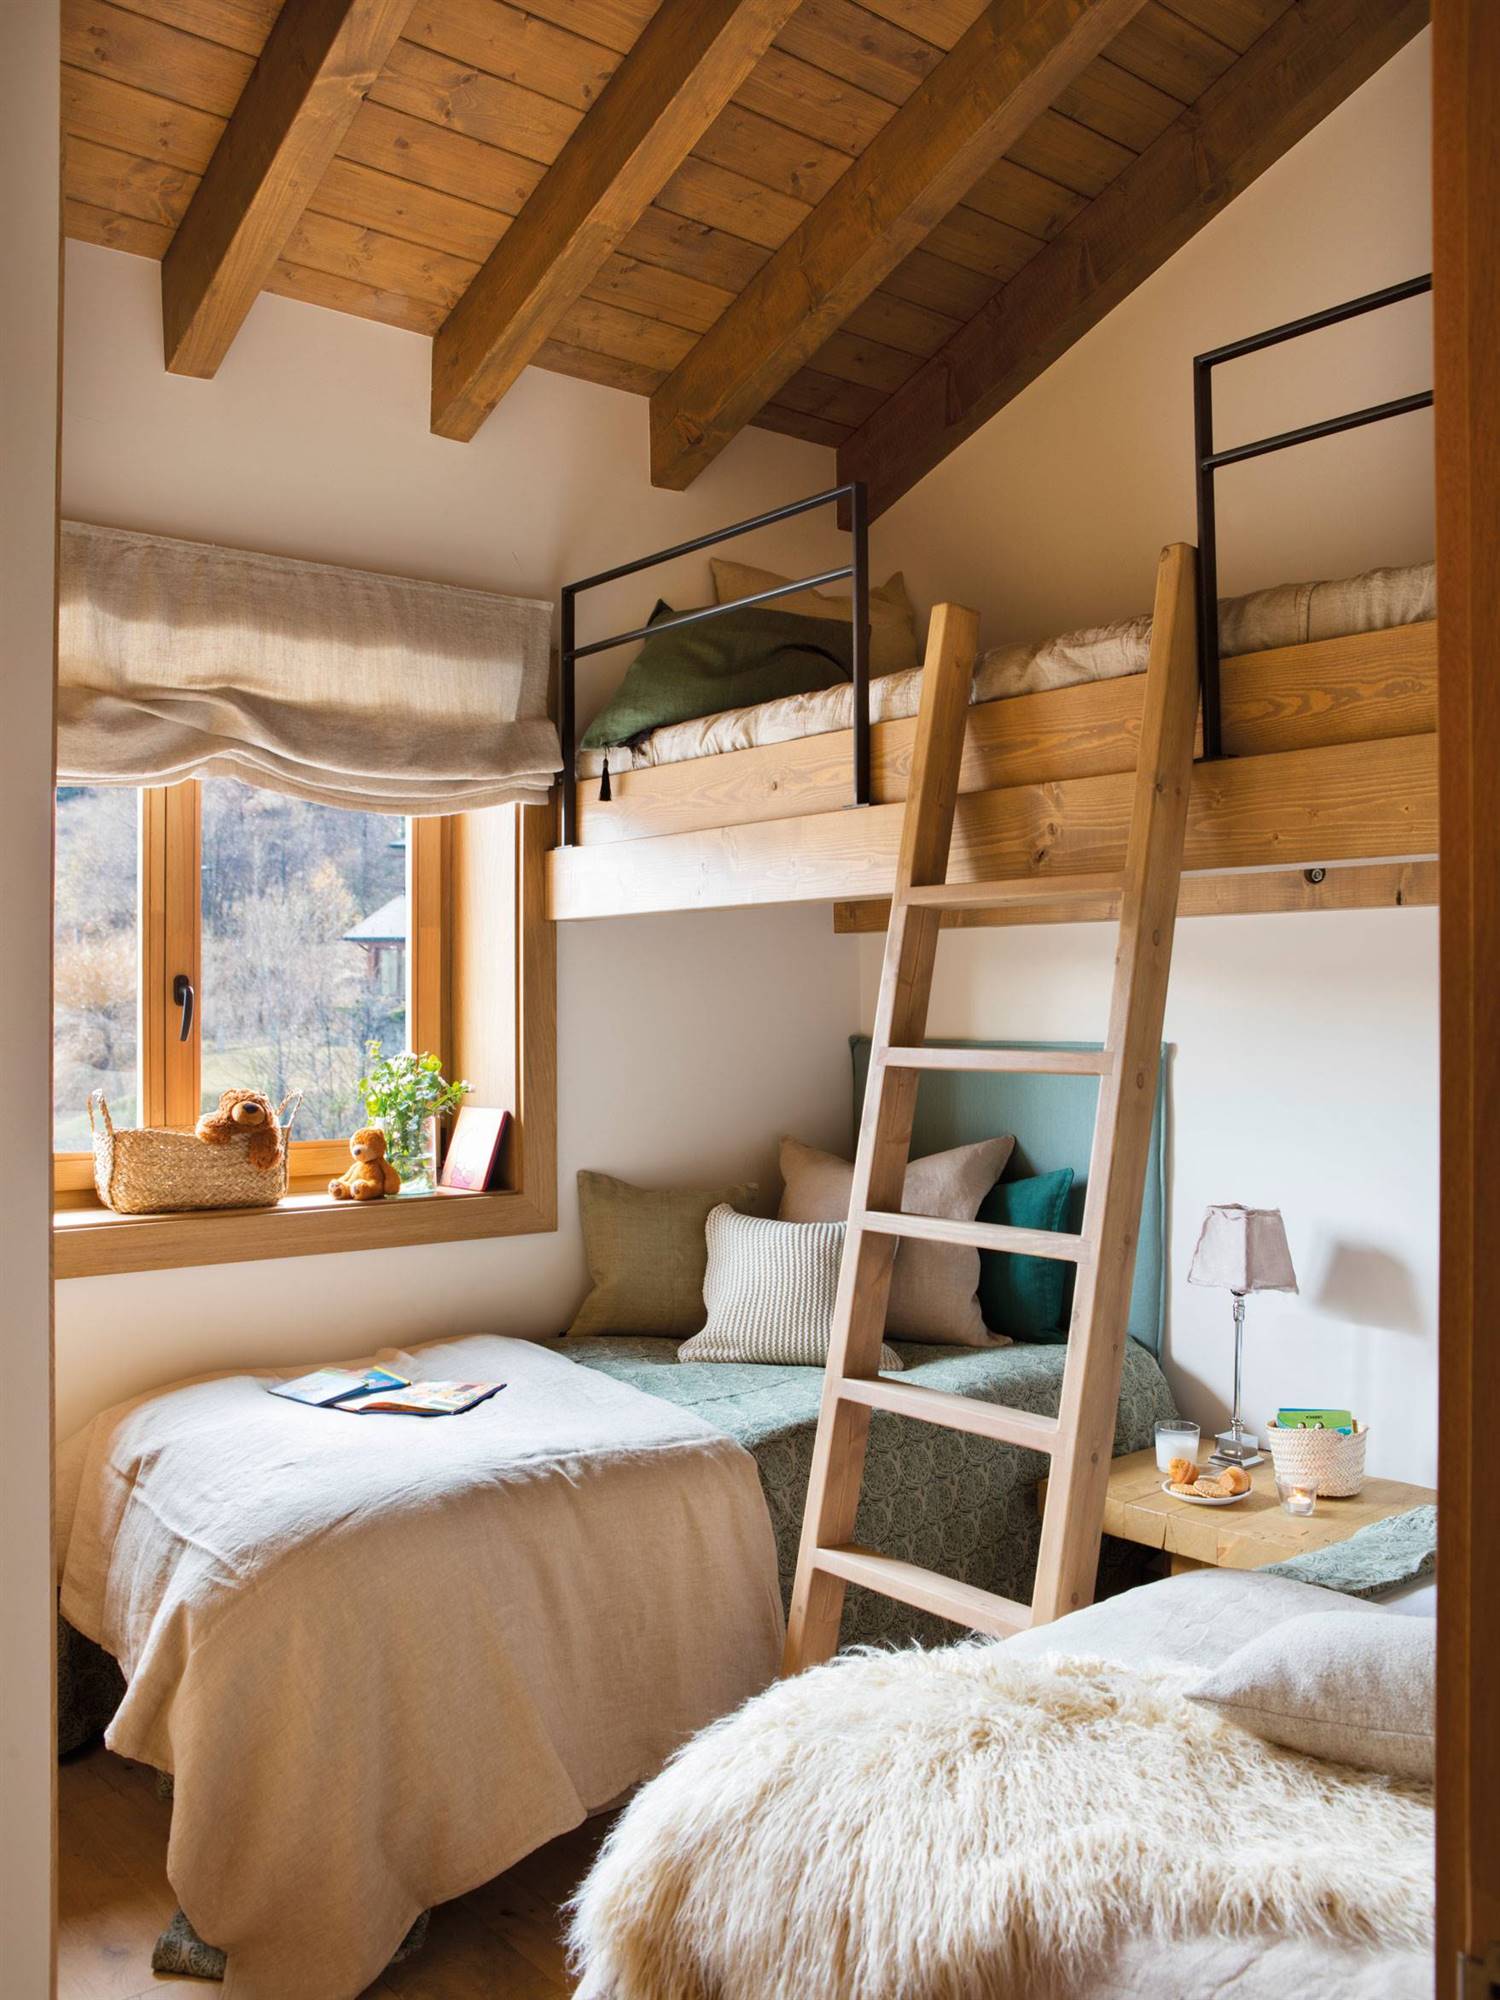 Dormitorio rústico en madera con literas, escalera, en arena y gris-500838